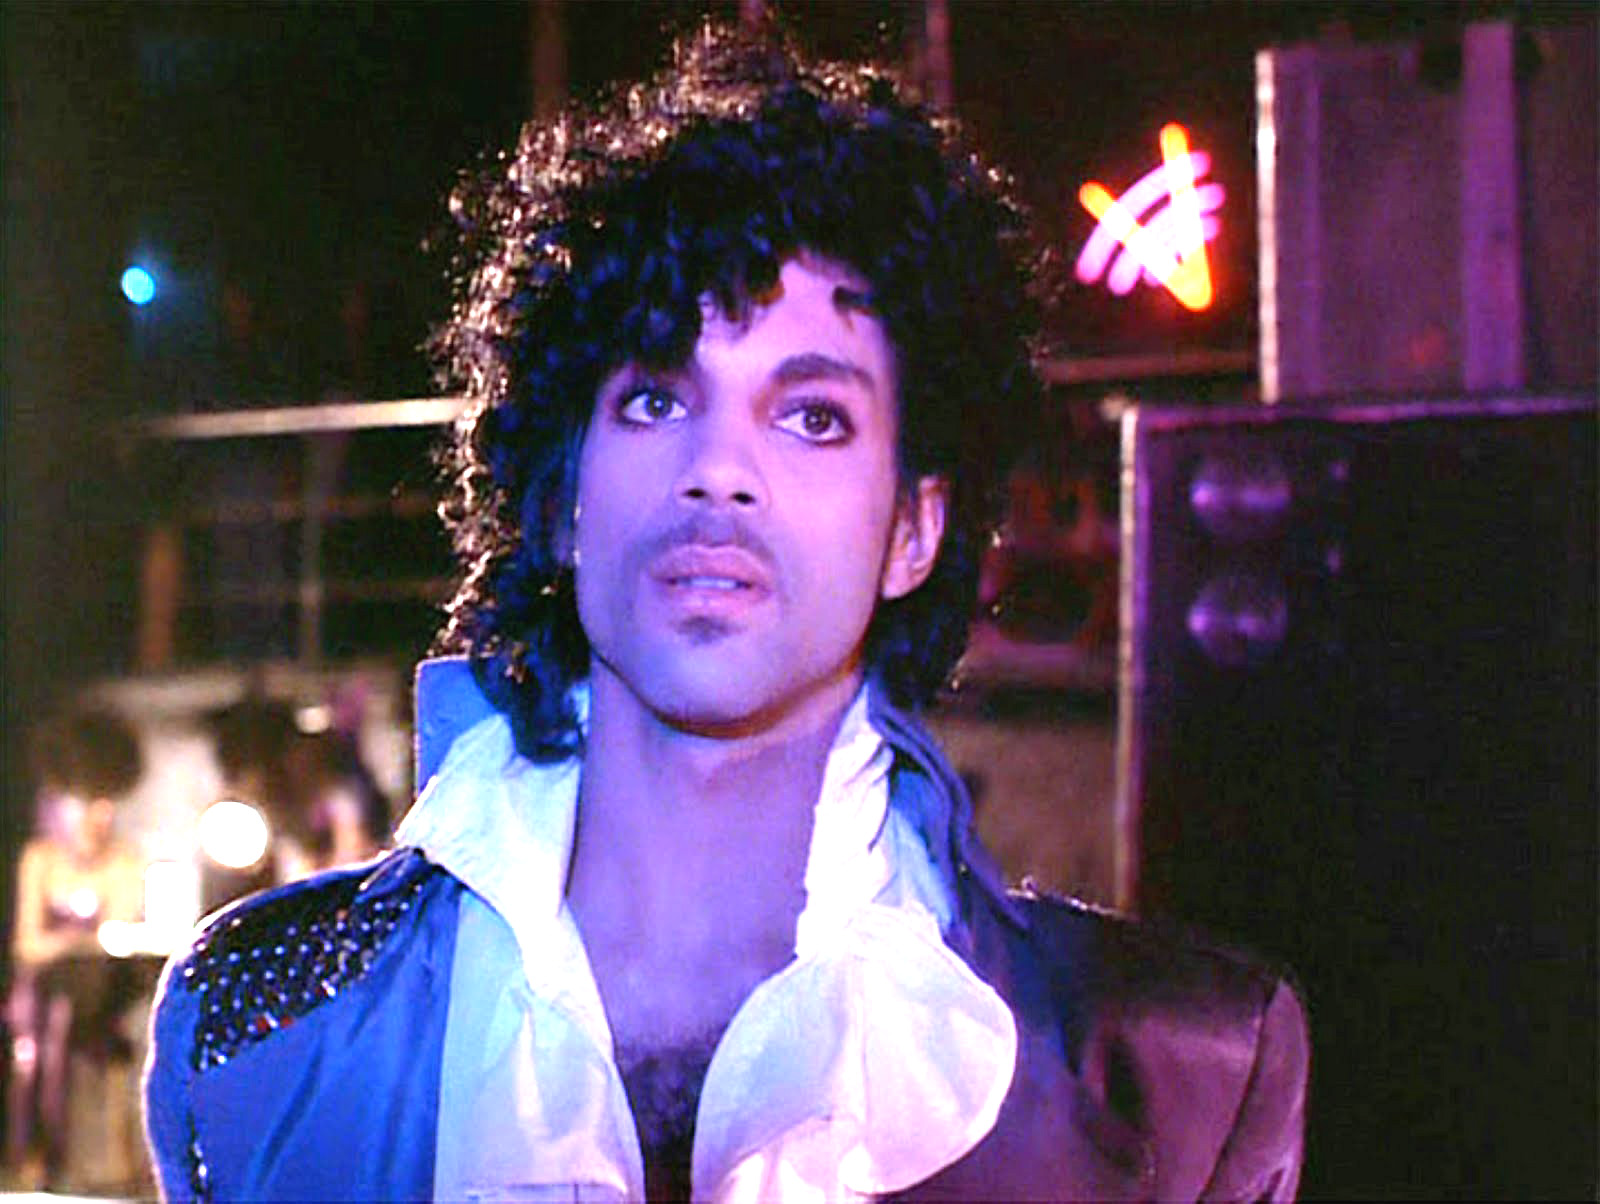 Morre, aos 57 anos, o cantor Prince